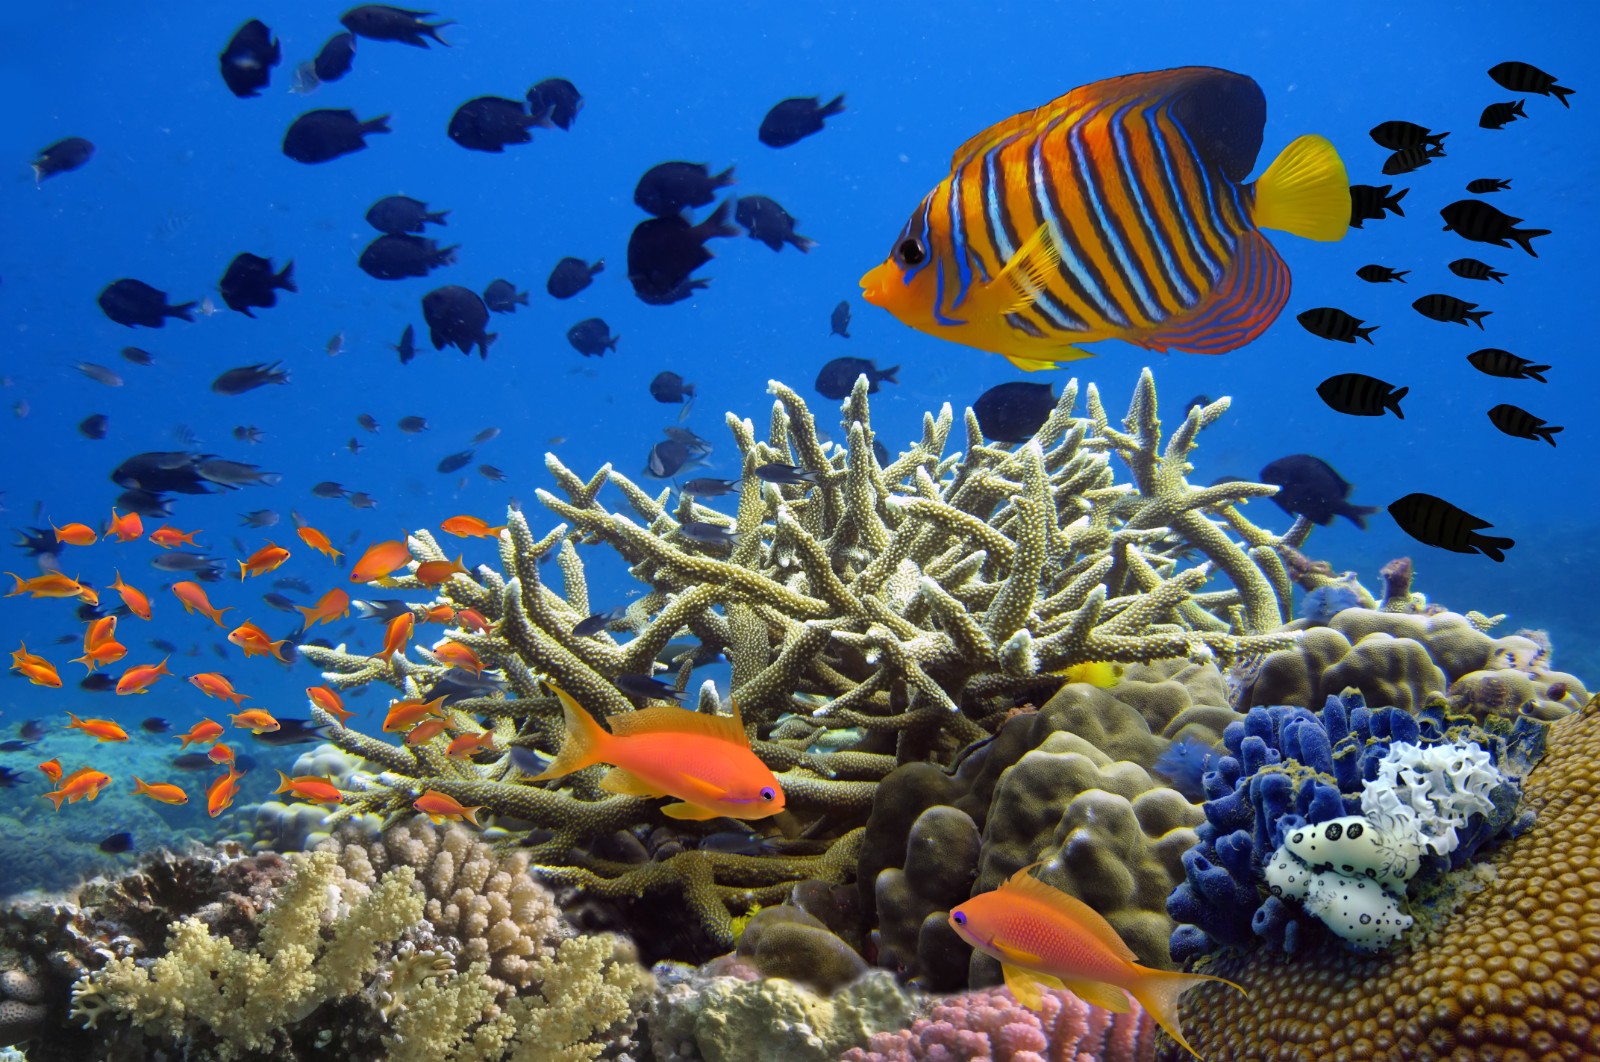 中国禁止进入三亚珊瑚礁开展违规海上旅游活动